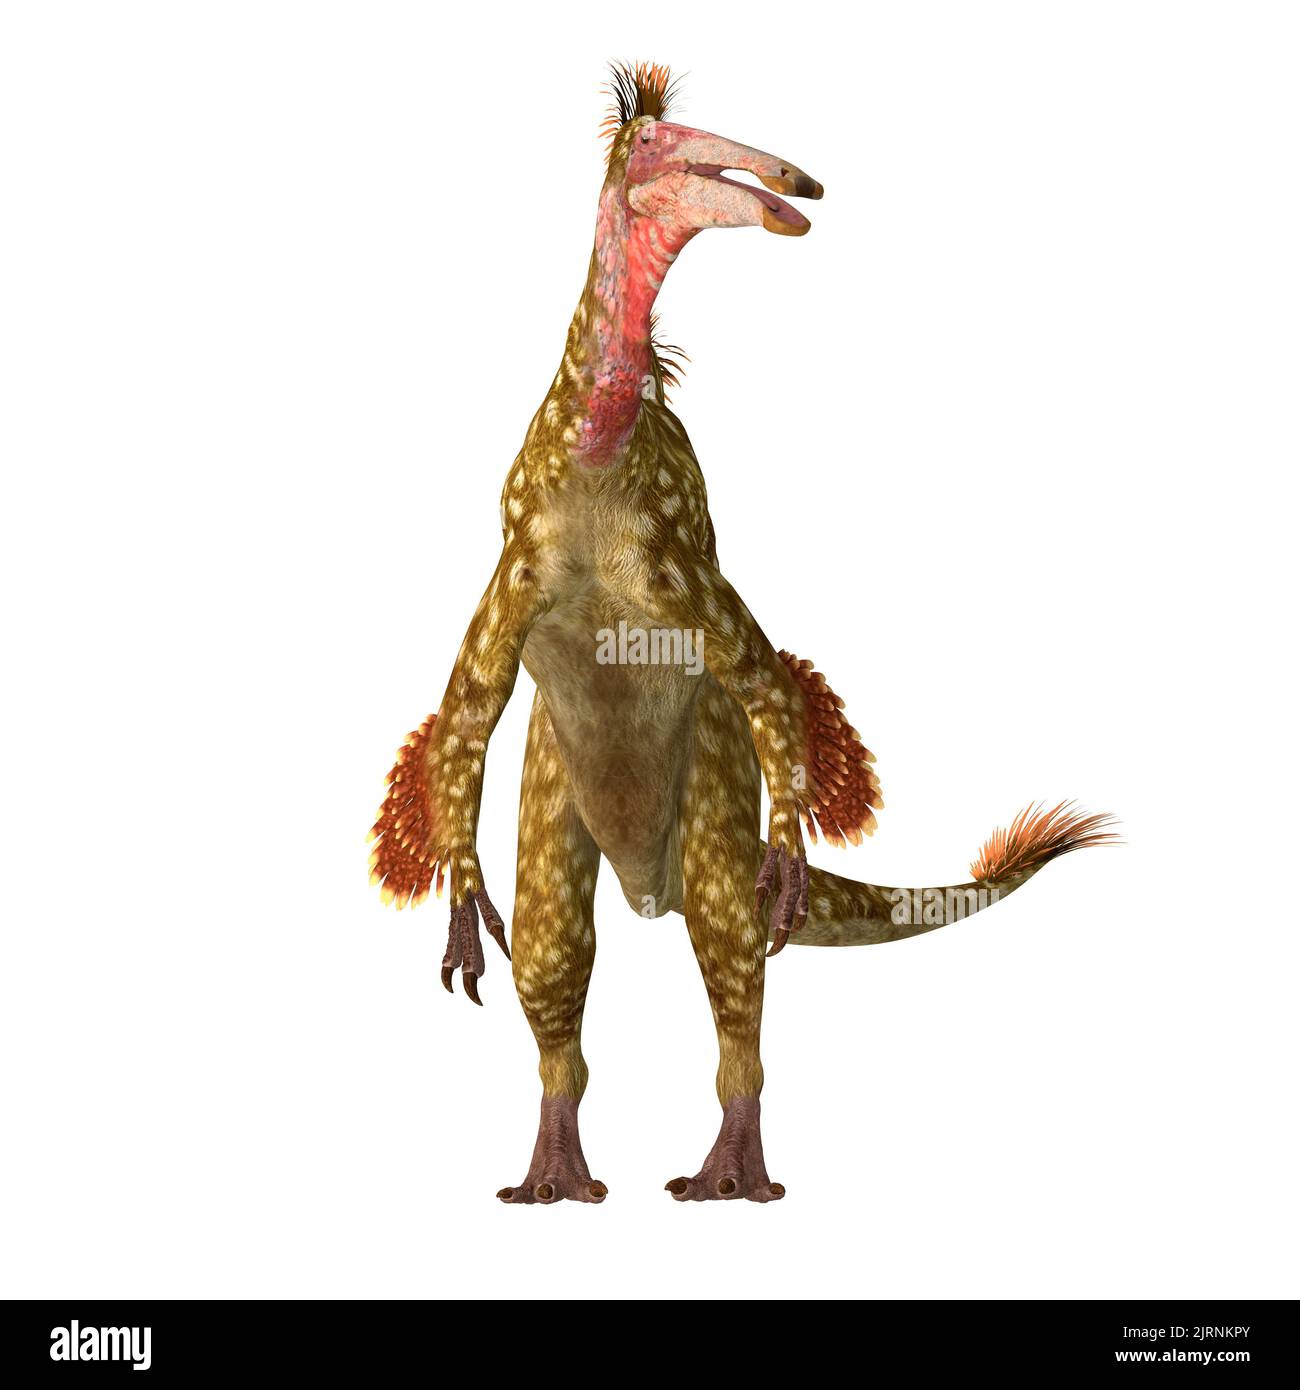 Deinocheirus était un dinosaure théropode prédateur qui vivait pendant la période crétacée de Mongolie. Banque D'Images